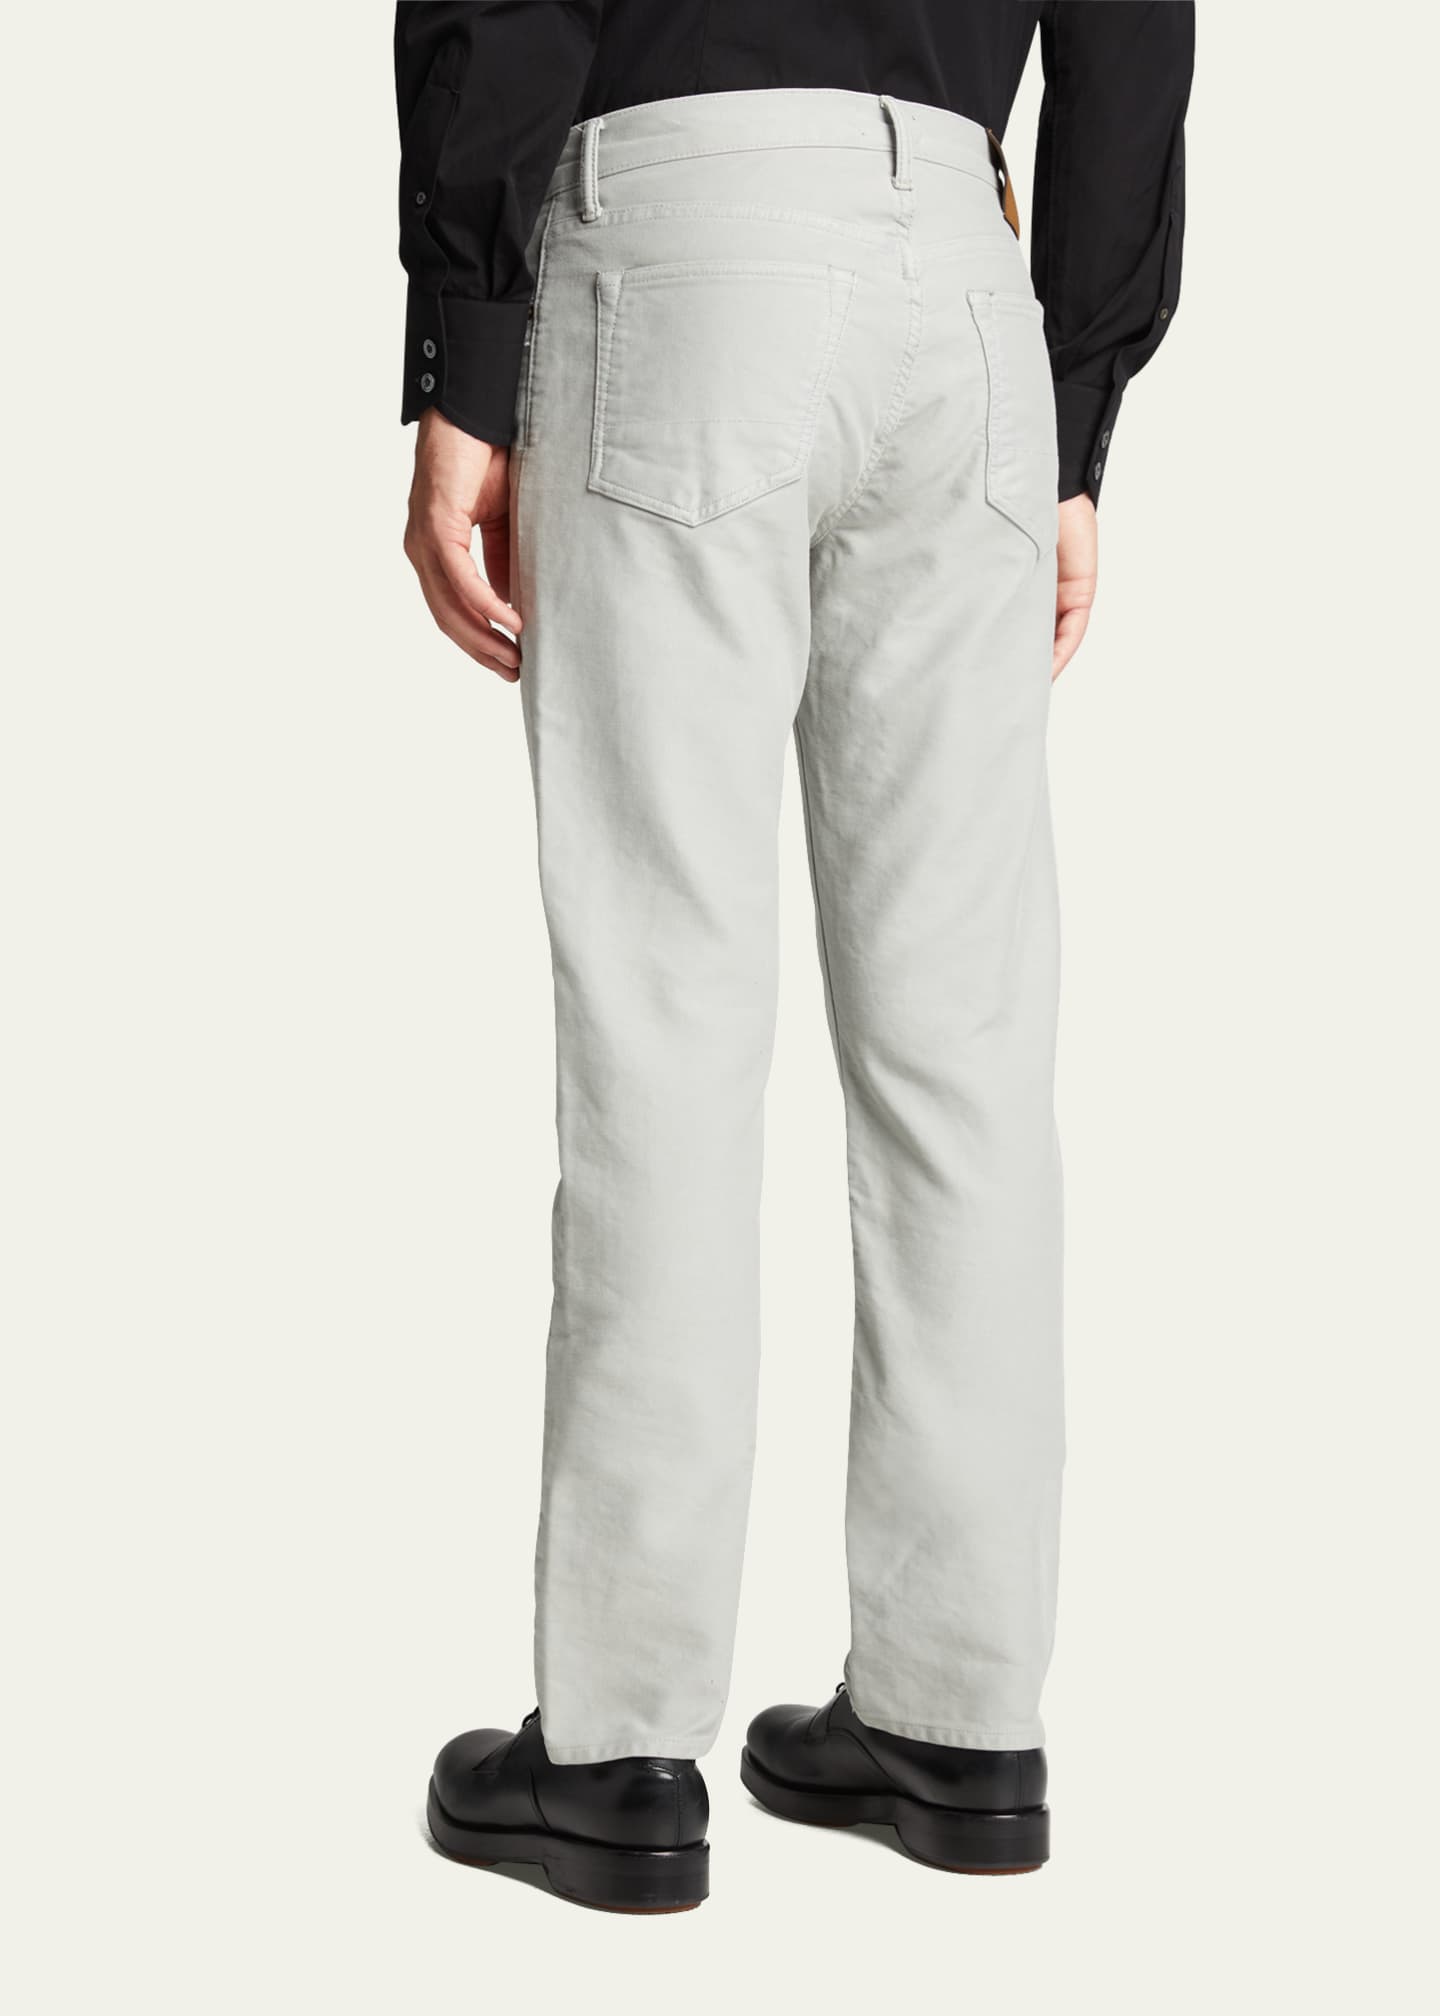 TOM FORD Men's Brushed 5-Pocket Jeans - Bergdorf Goodman